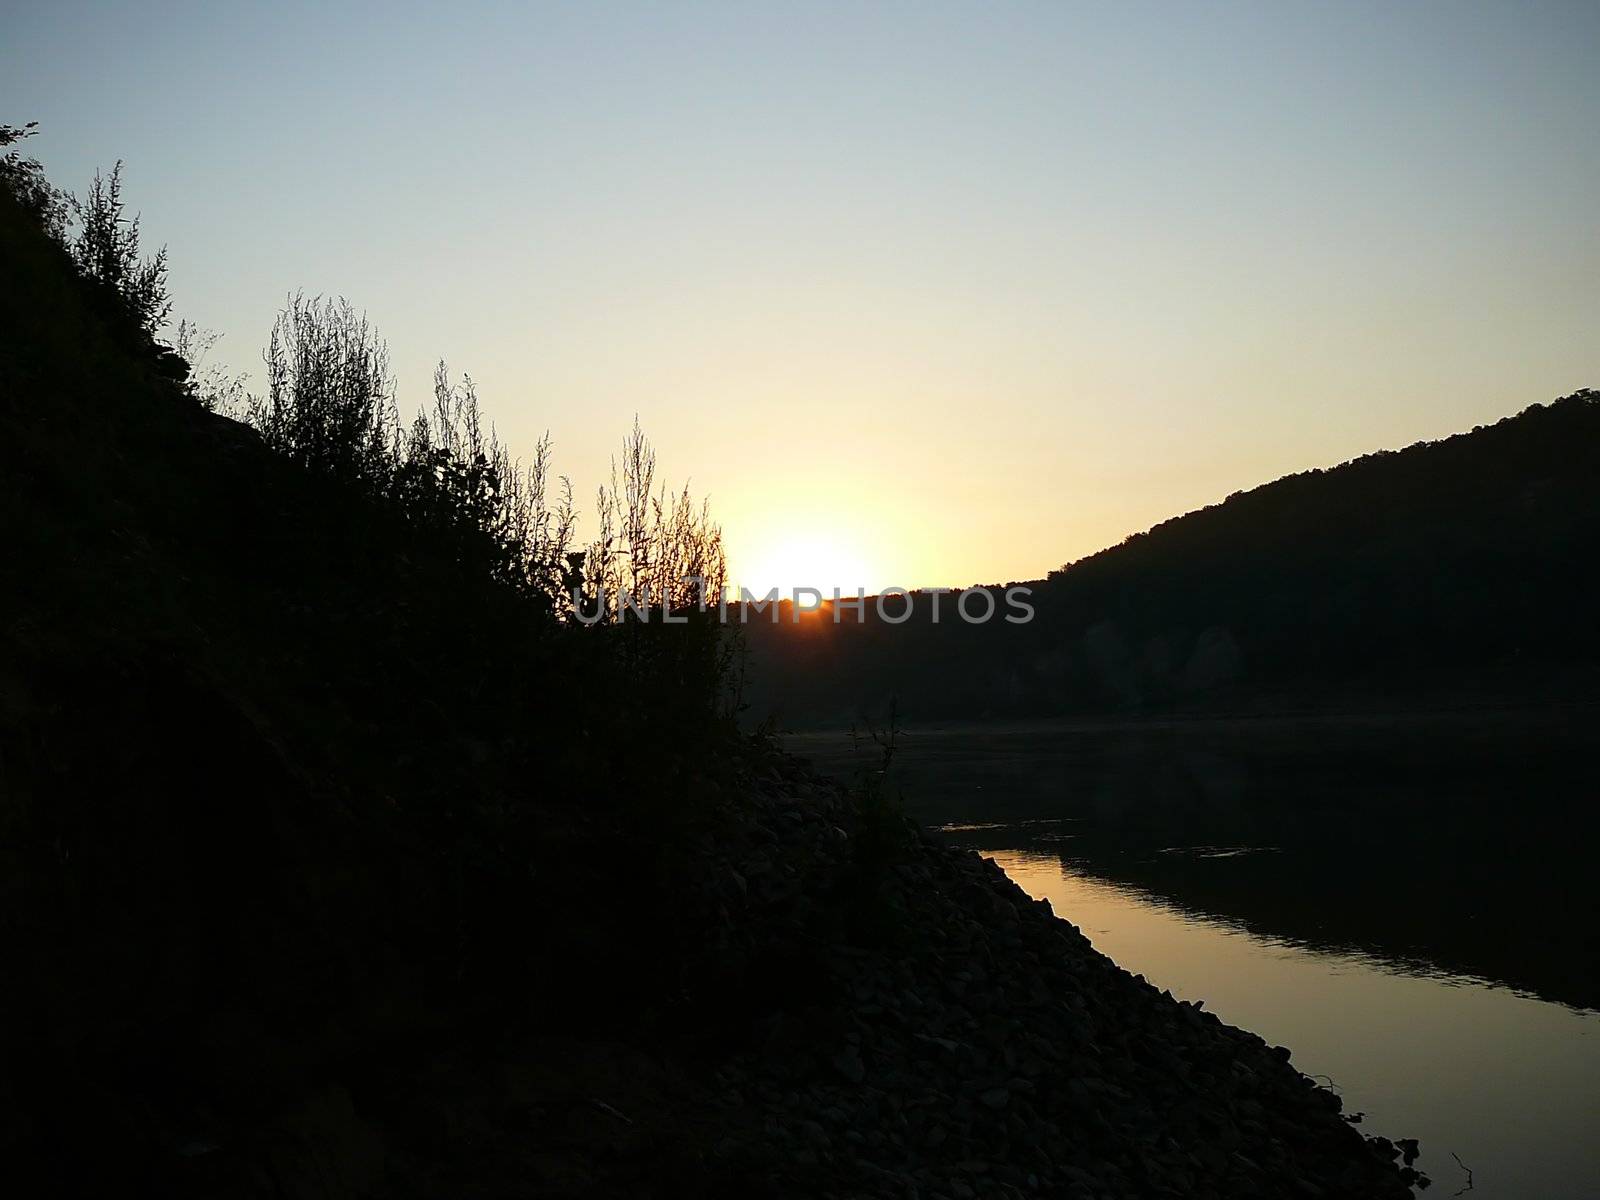 river in dusk, begin of sunrise